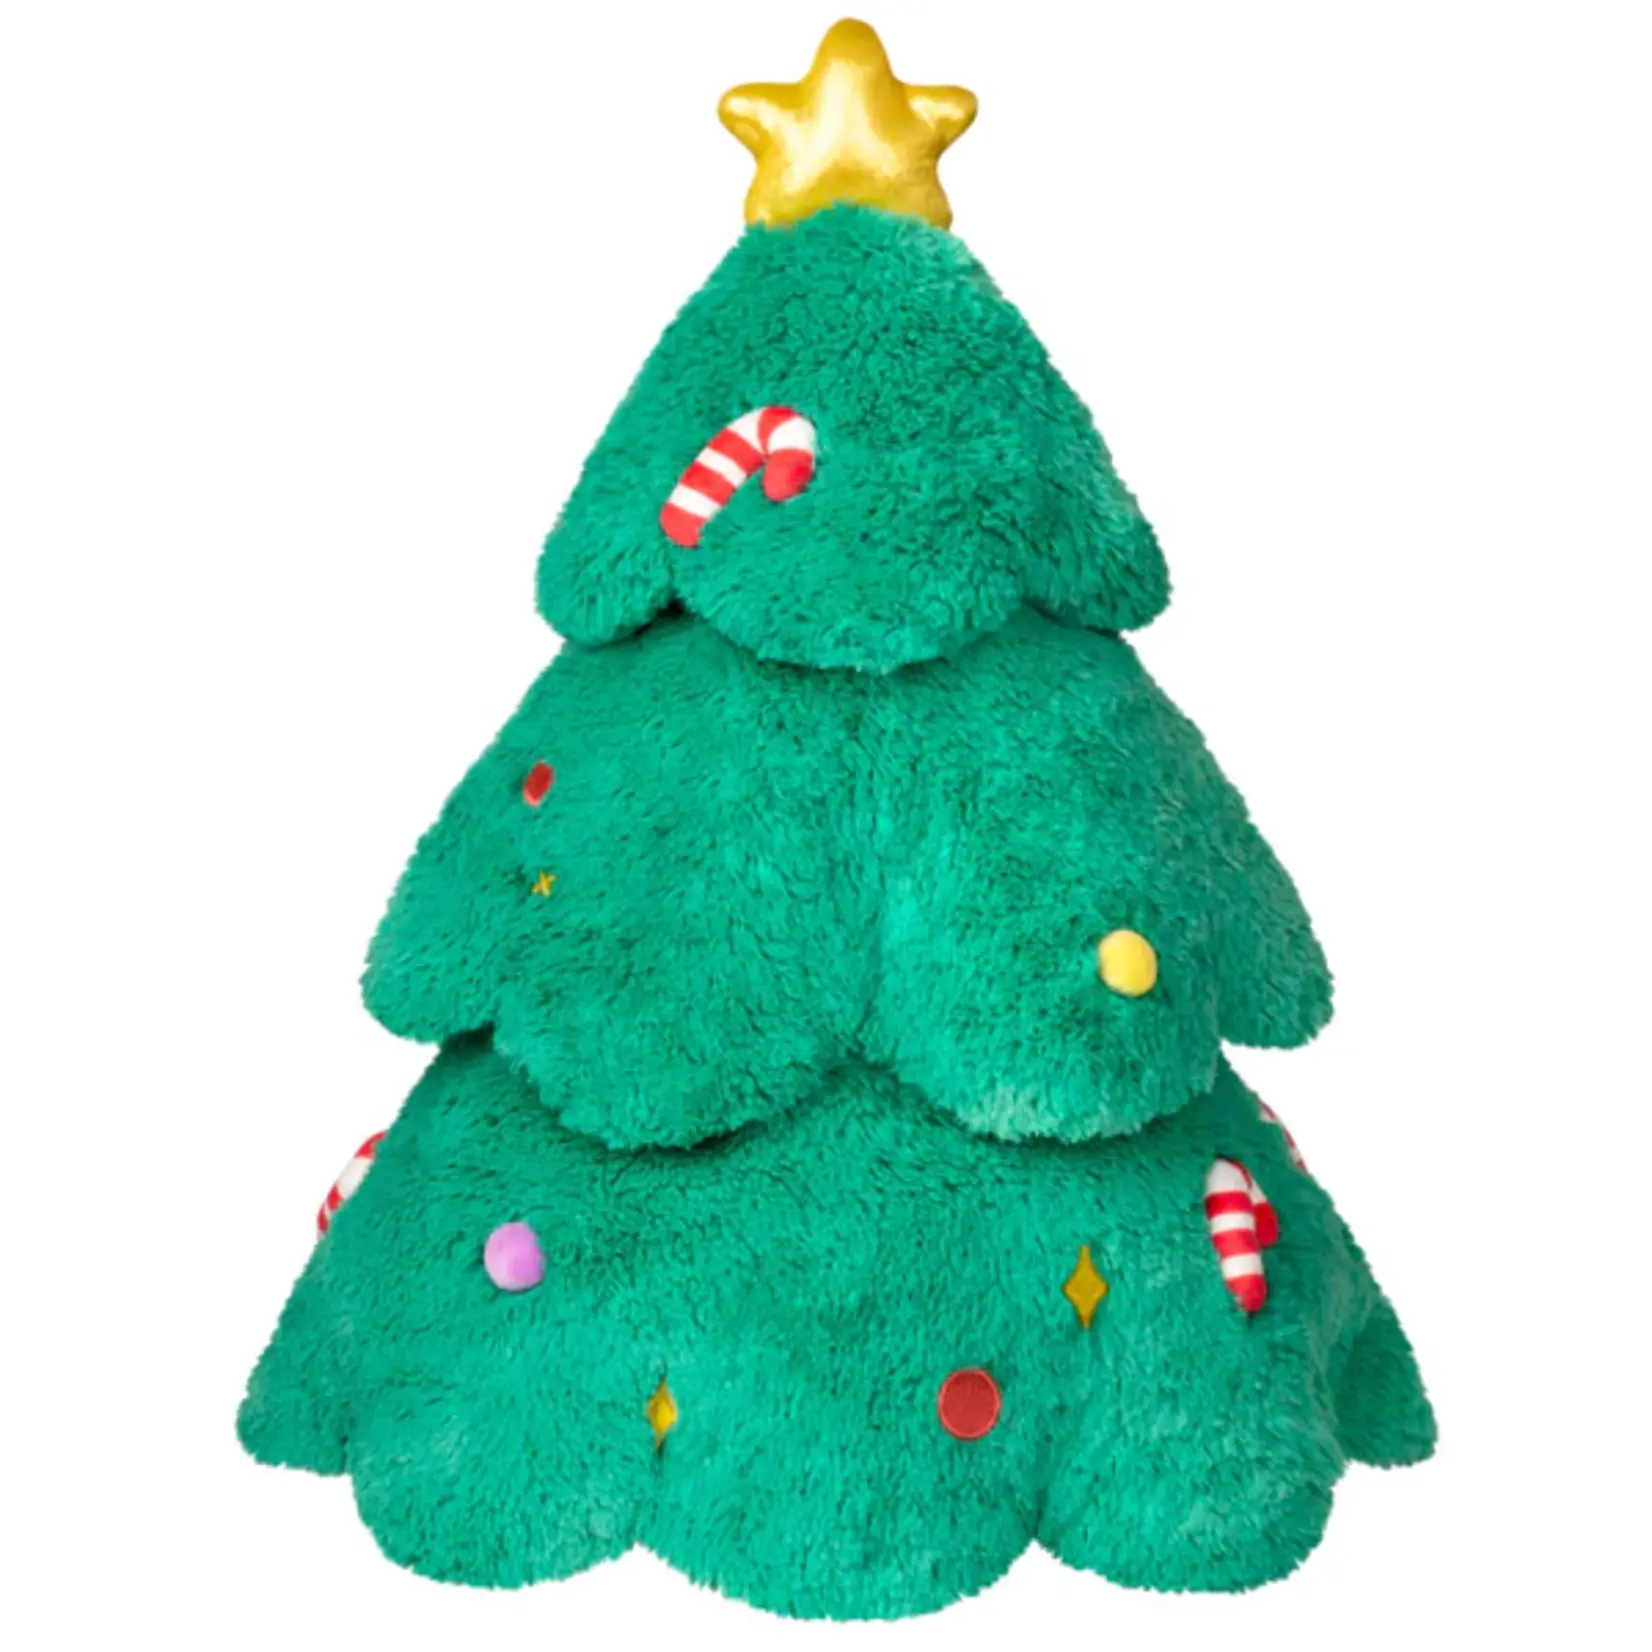 Squishable Christmas Tree 15"